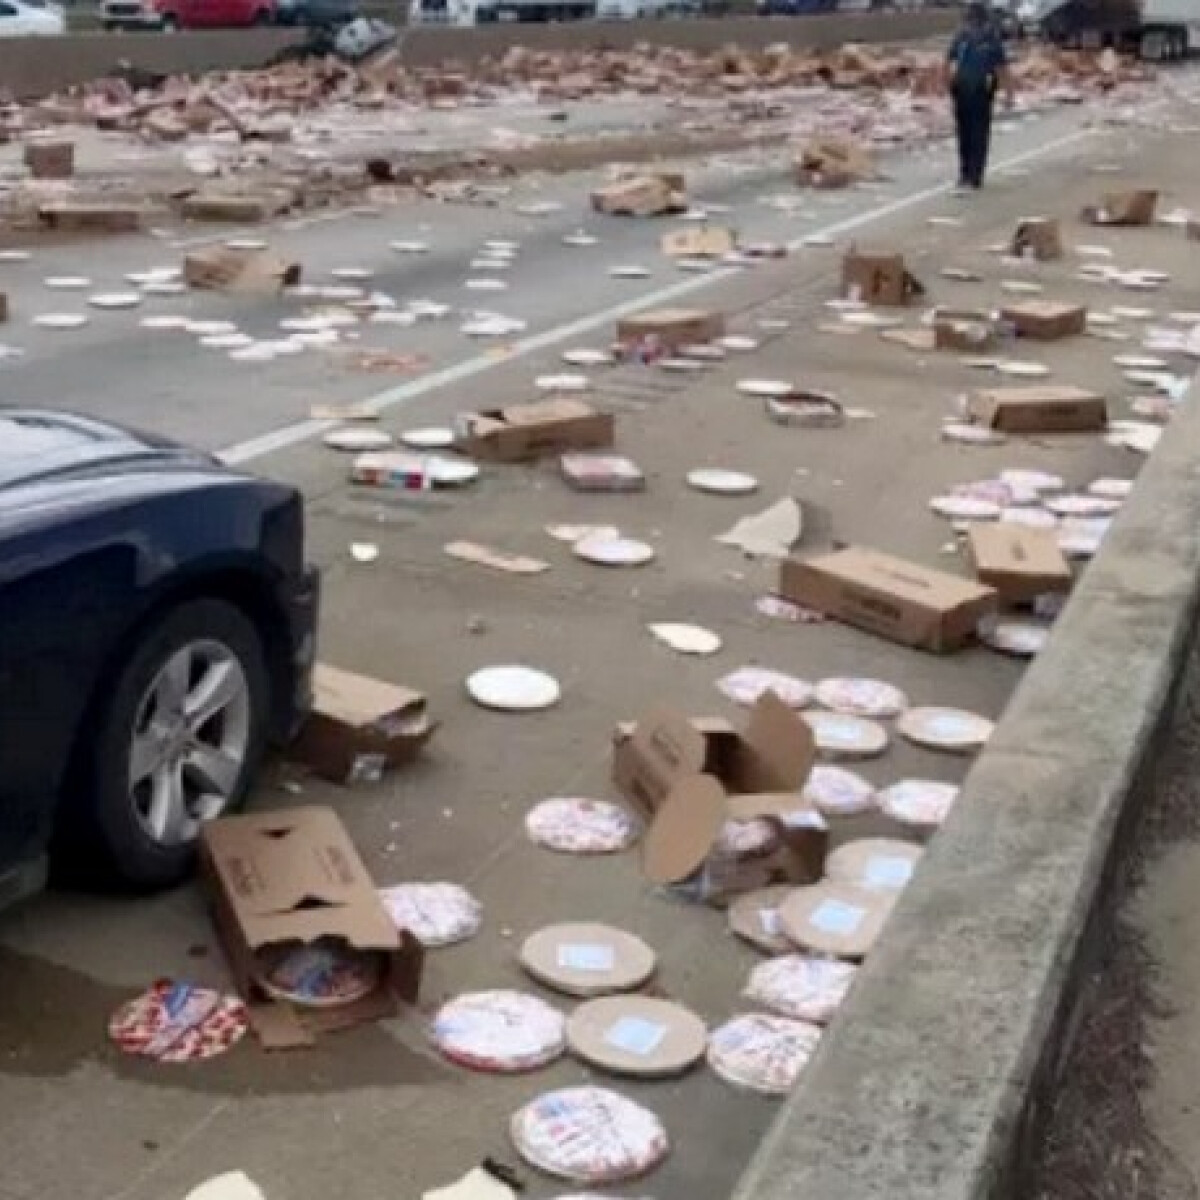 Így néz ki több ezernyi szomorú szétszóródott pizza az amerikai autópályán